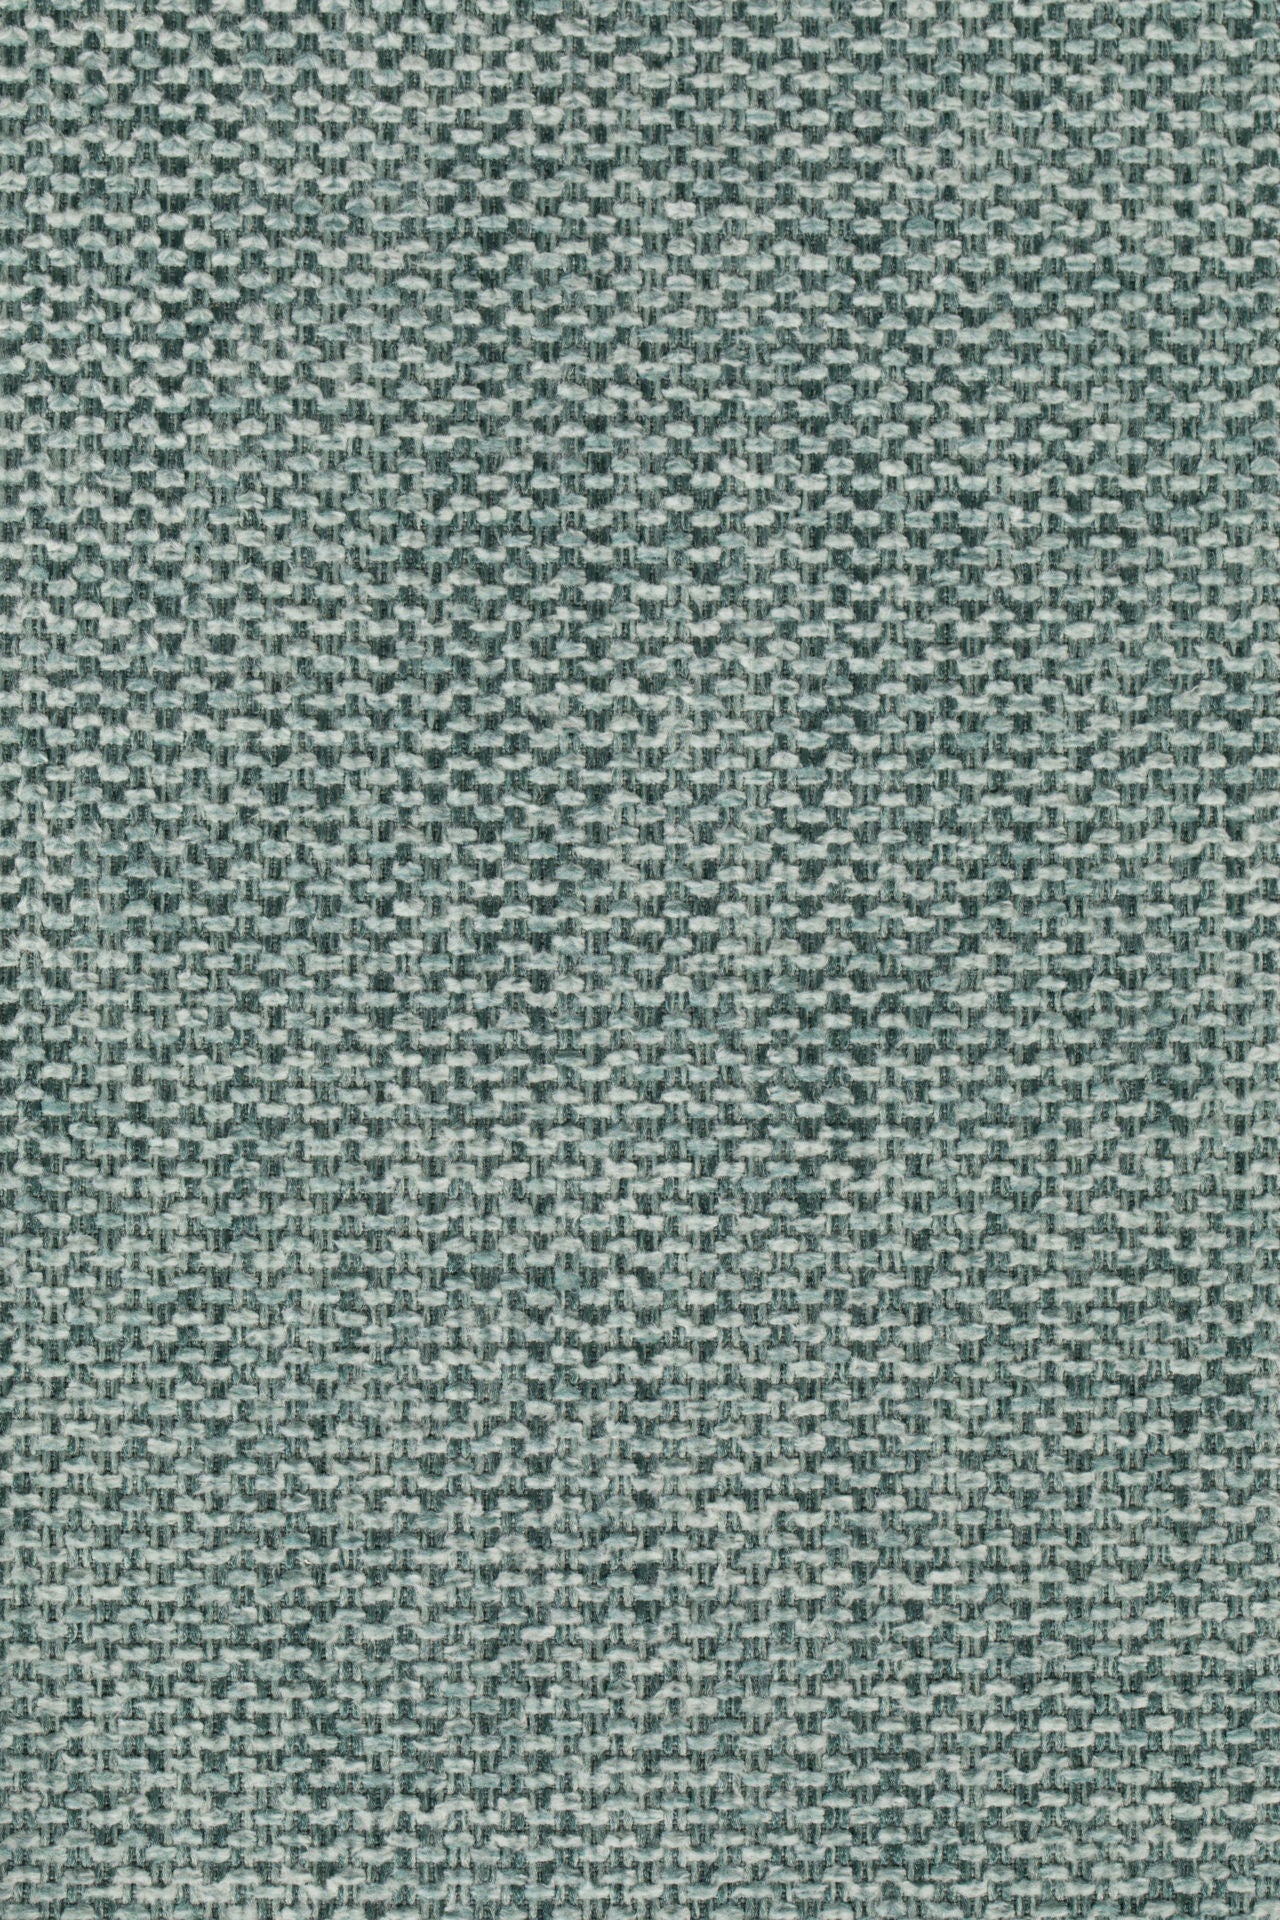 Chaise longue Nancy's Diamond Springs - Industriel -Vert clair - Polyester, Contreplaqué, Acier - 60 cm x 56 cm x 68 cm